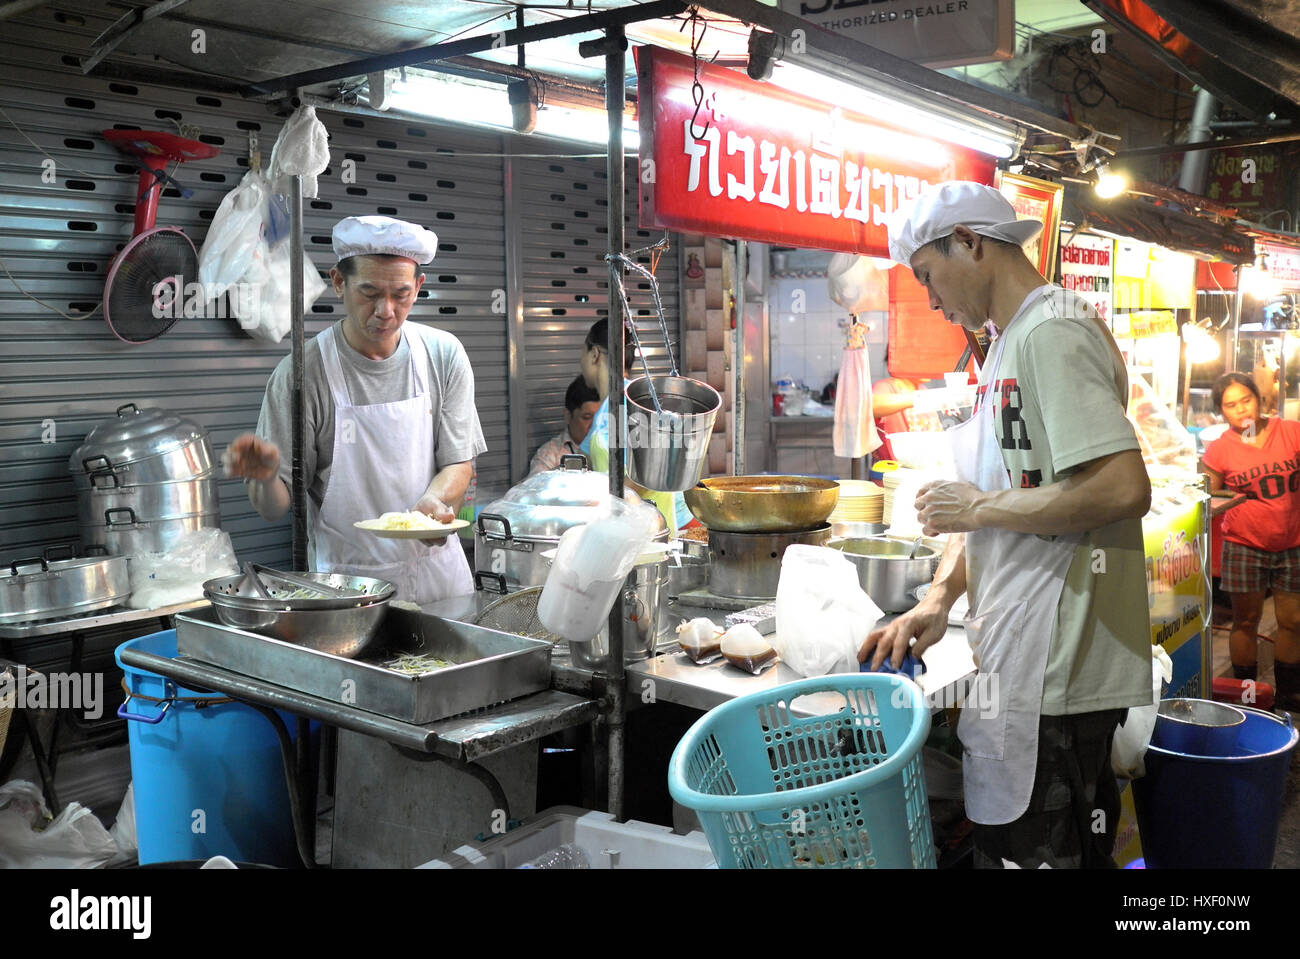 Cuisine de rue dans le quartier chinois, qui est situé à l'Yaowarat Road dans le district de Samphanthawong à Bangkok, Thaïlande. Le Chinatown de Bangkok est une popula Banque D'Images